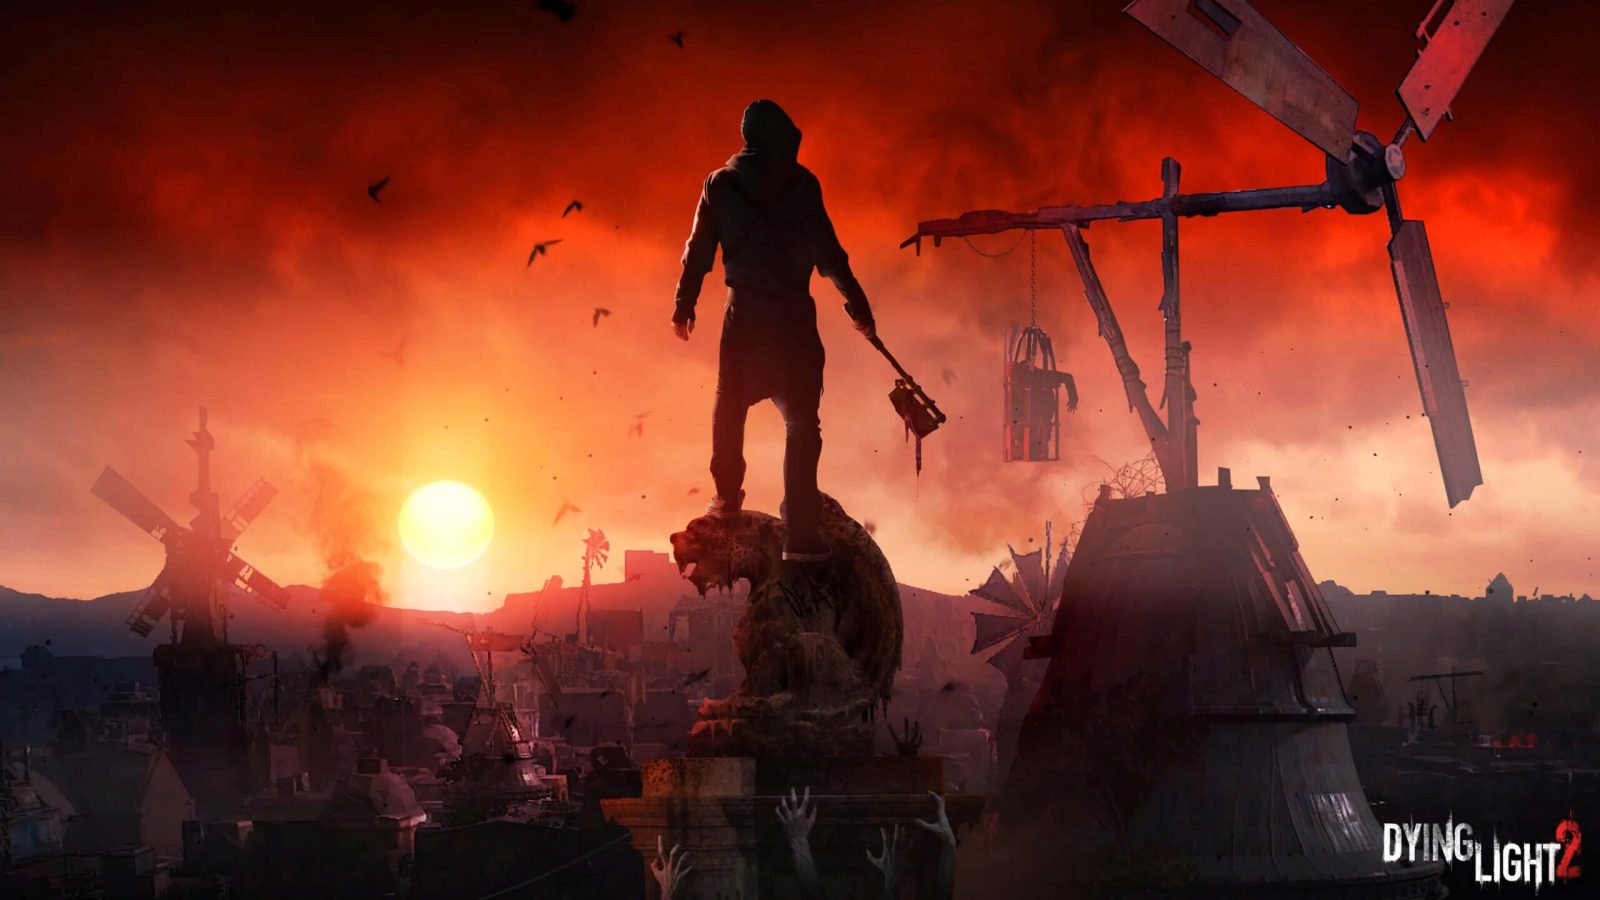 گرافیک Dying Light 2 در نسخه های نسل هشتمی راضی کننده خواهد بود